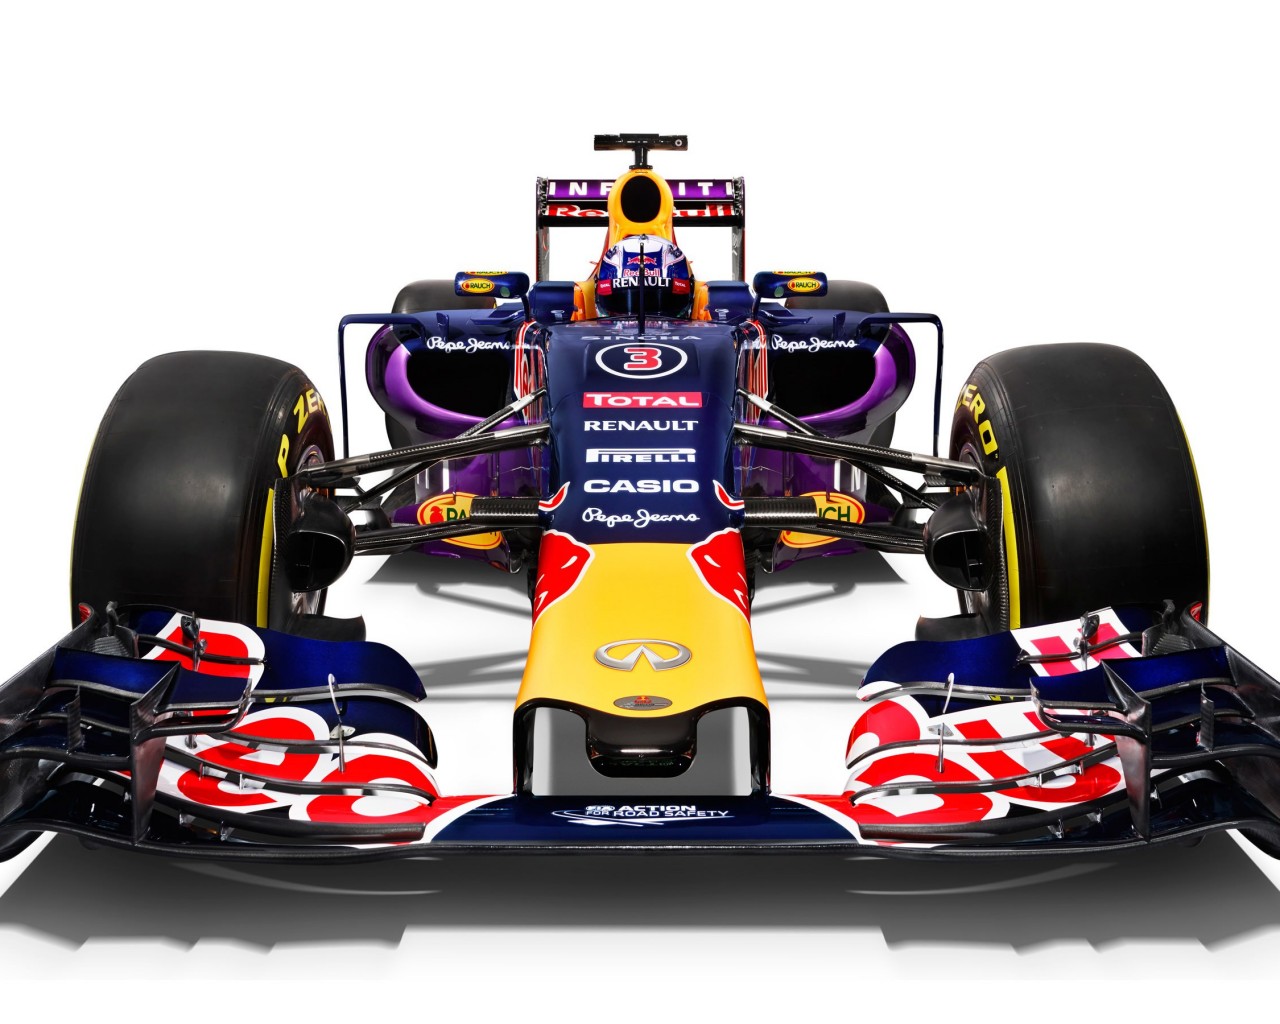 Infiniti Red Bull Racing RB11 2015 Formula 1 Car Wallpaper for Desktop 1280x1024